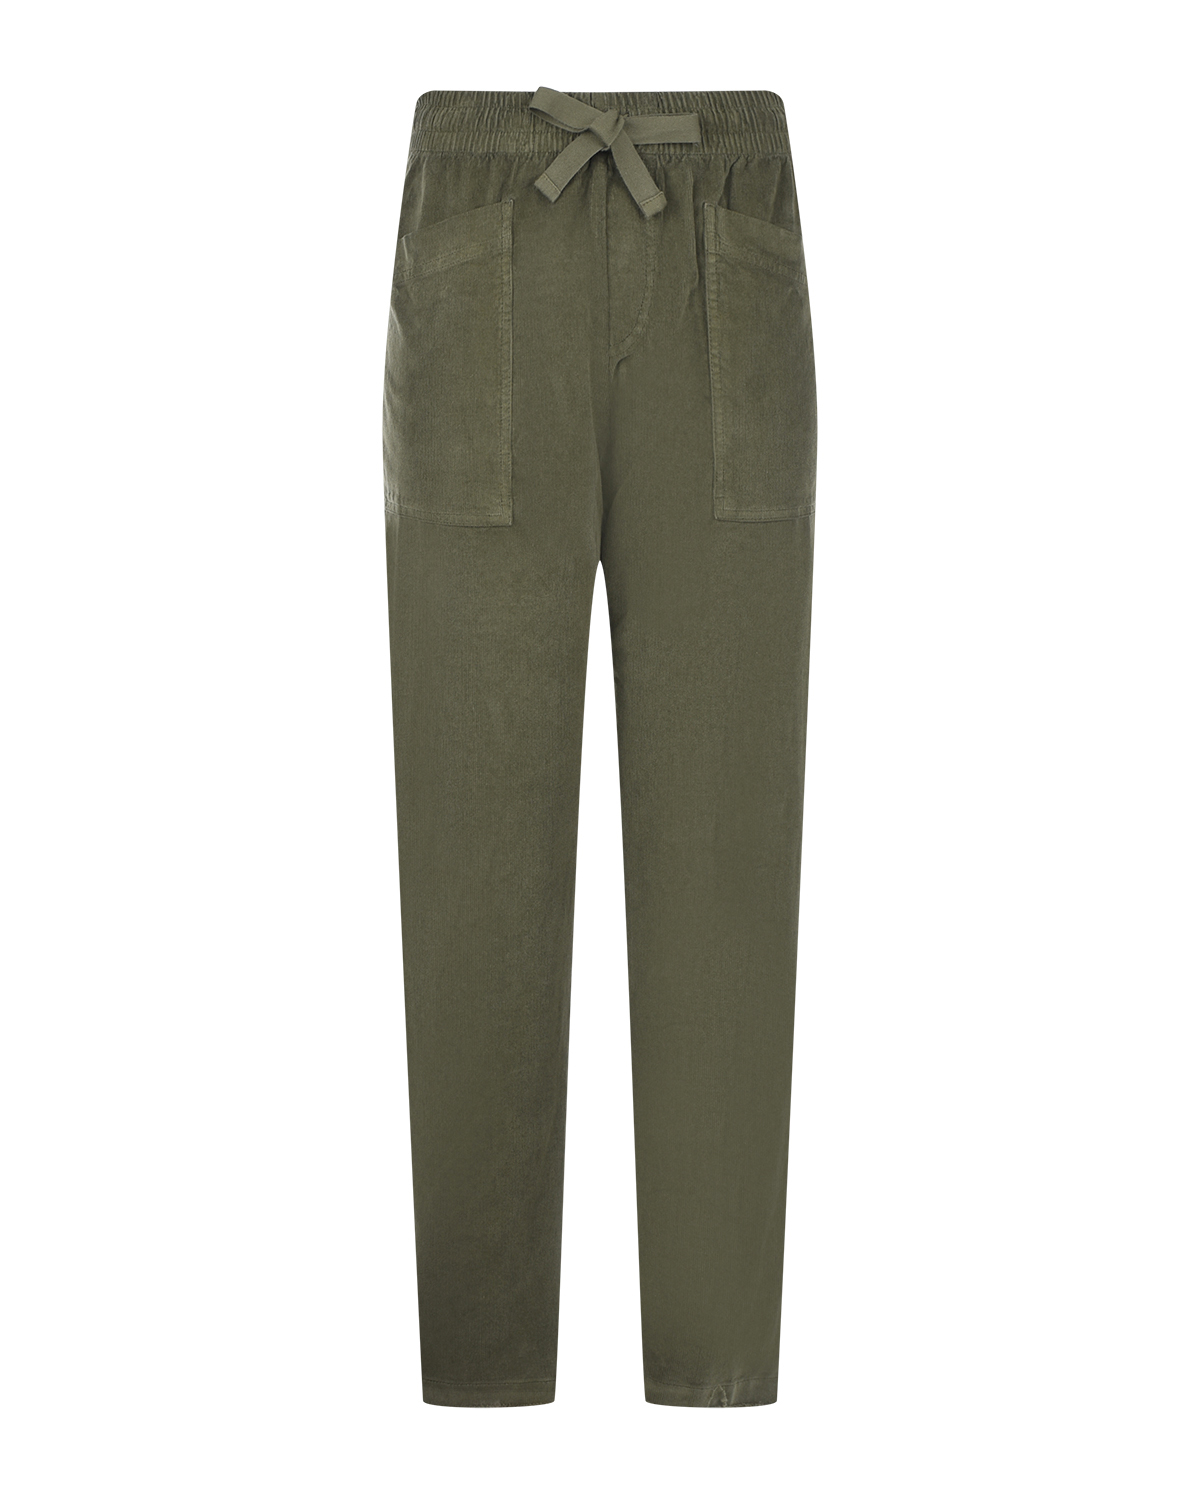 Вельветовые брюки оливкового цвета Deha, размер 44 - фото 1